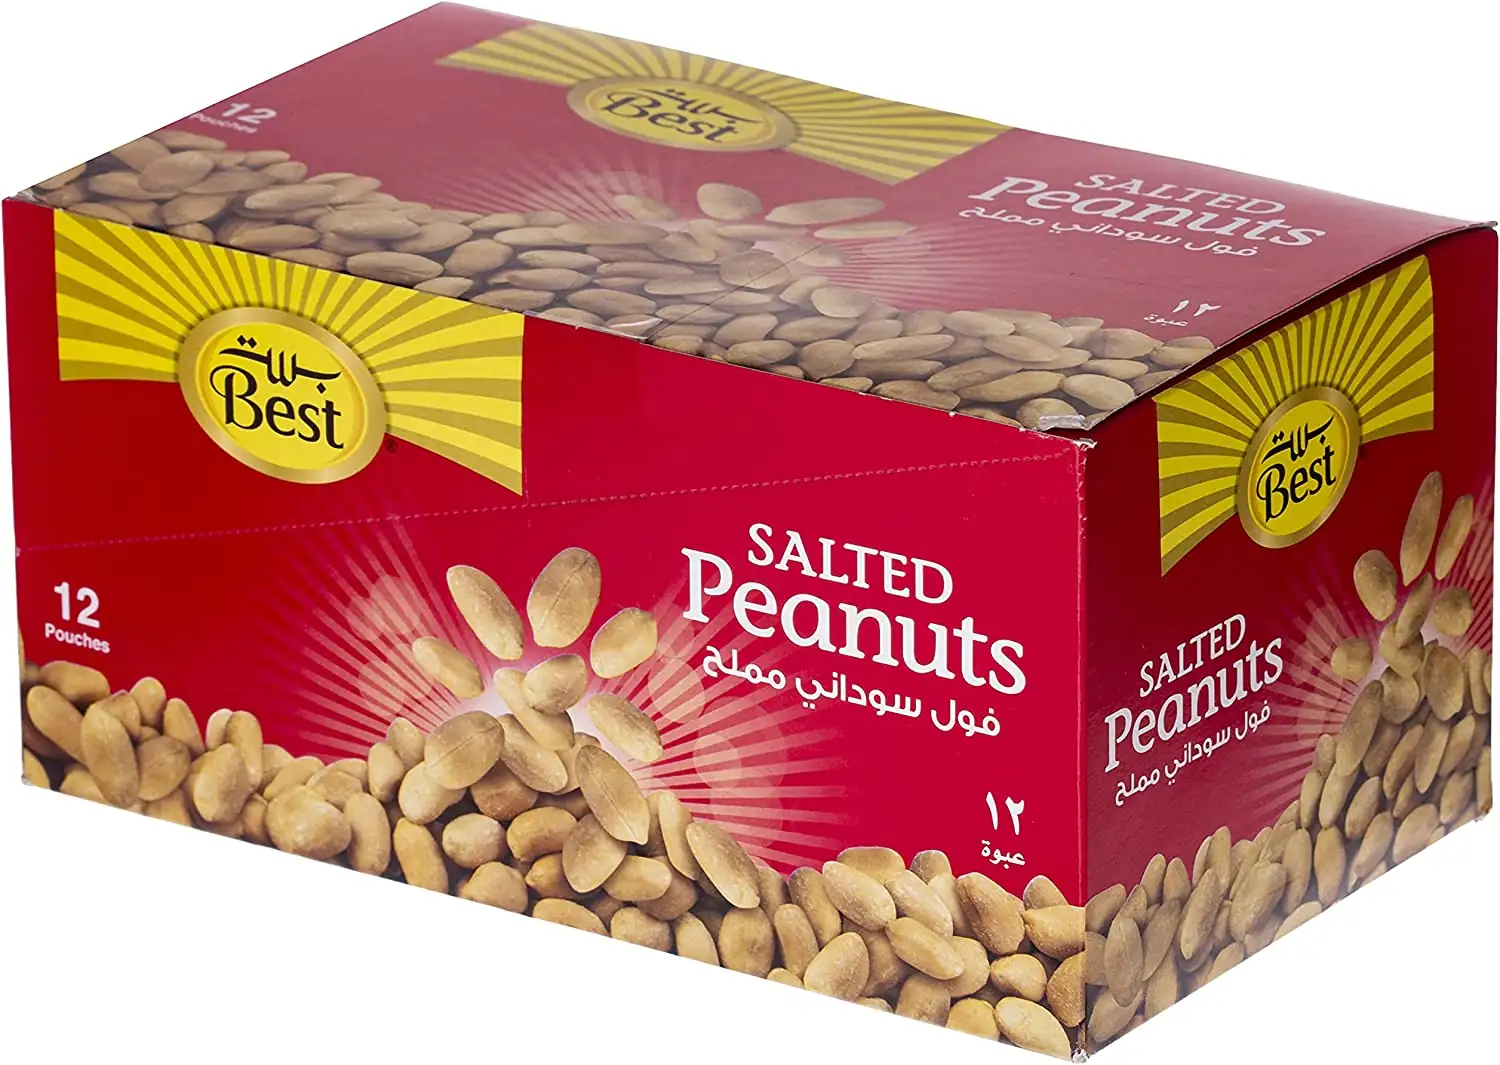 Best Salted Peanuts 30gm Box 12pcs - 0 (JBI16815E)